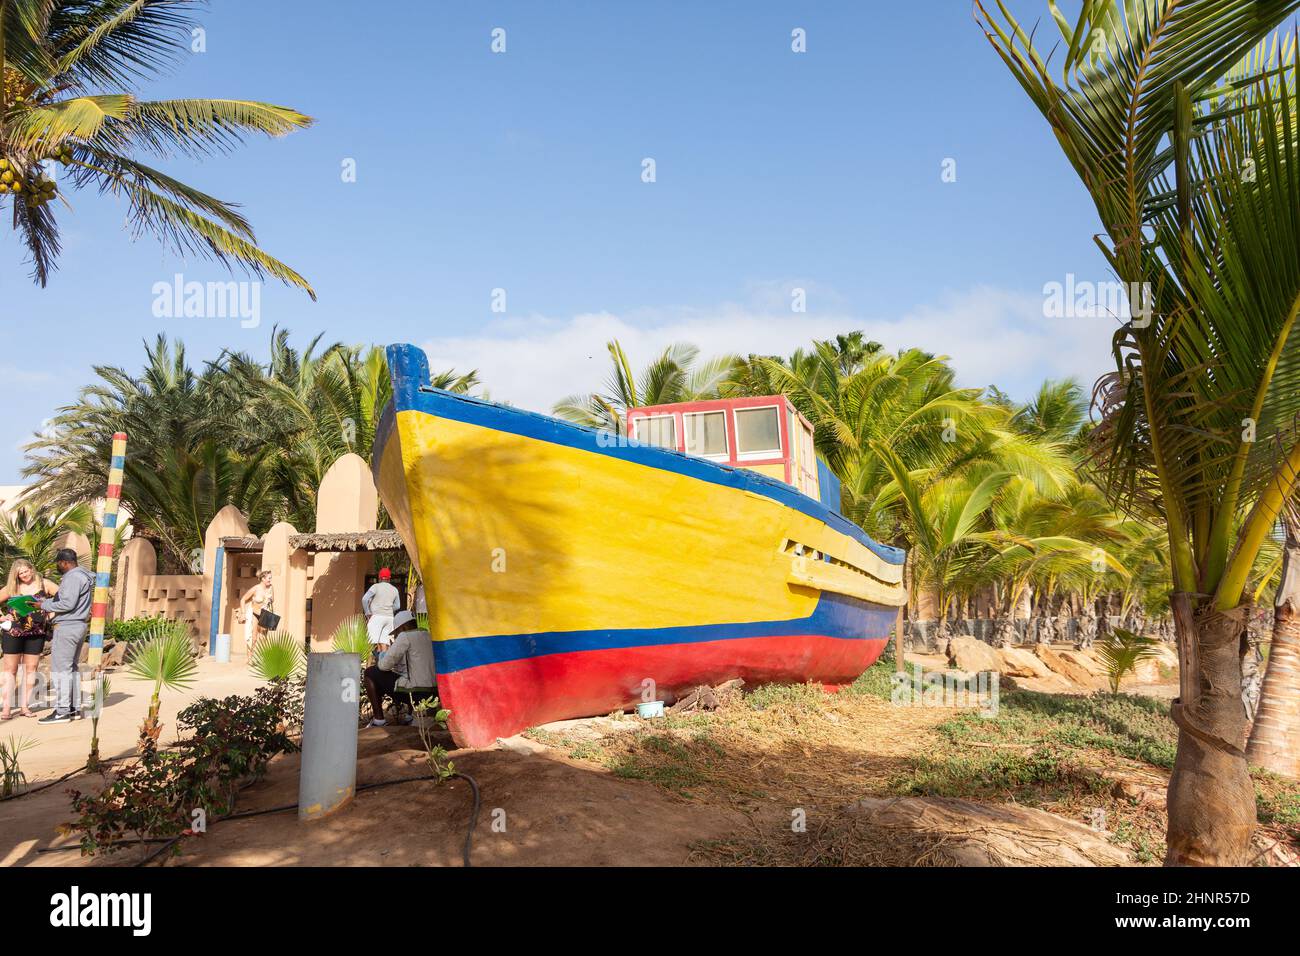 Colourful fishing boat on path to beach, Rui Funana Hotel, Santa Maria, Sal, República de Cabo (Cape Verde) Stock Photo